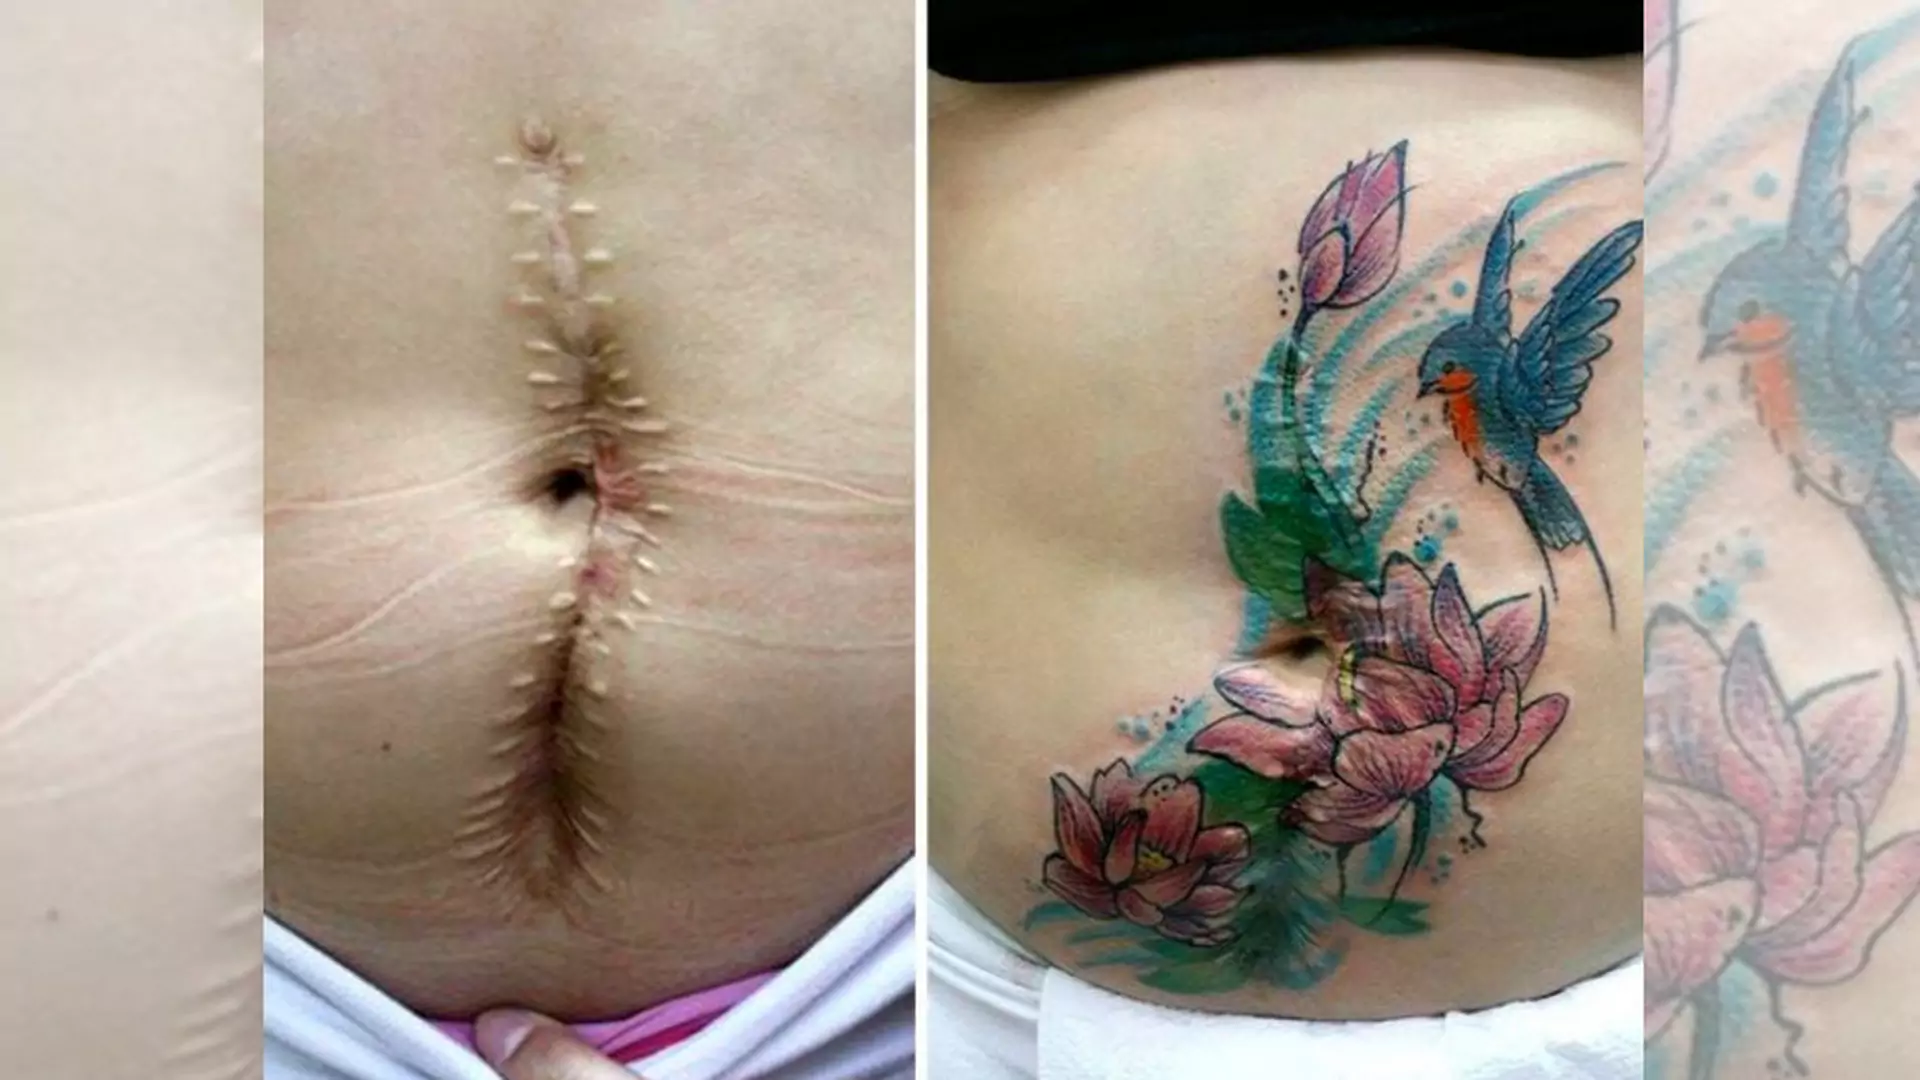 Szpecące blizny zakrywa pięknymi tatuażami, by kobiety dotknięte przemocą zapomniały o swojej traumie